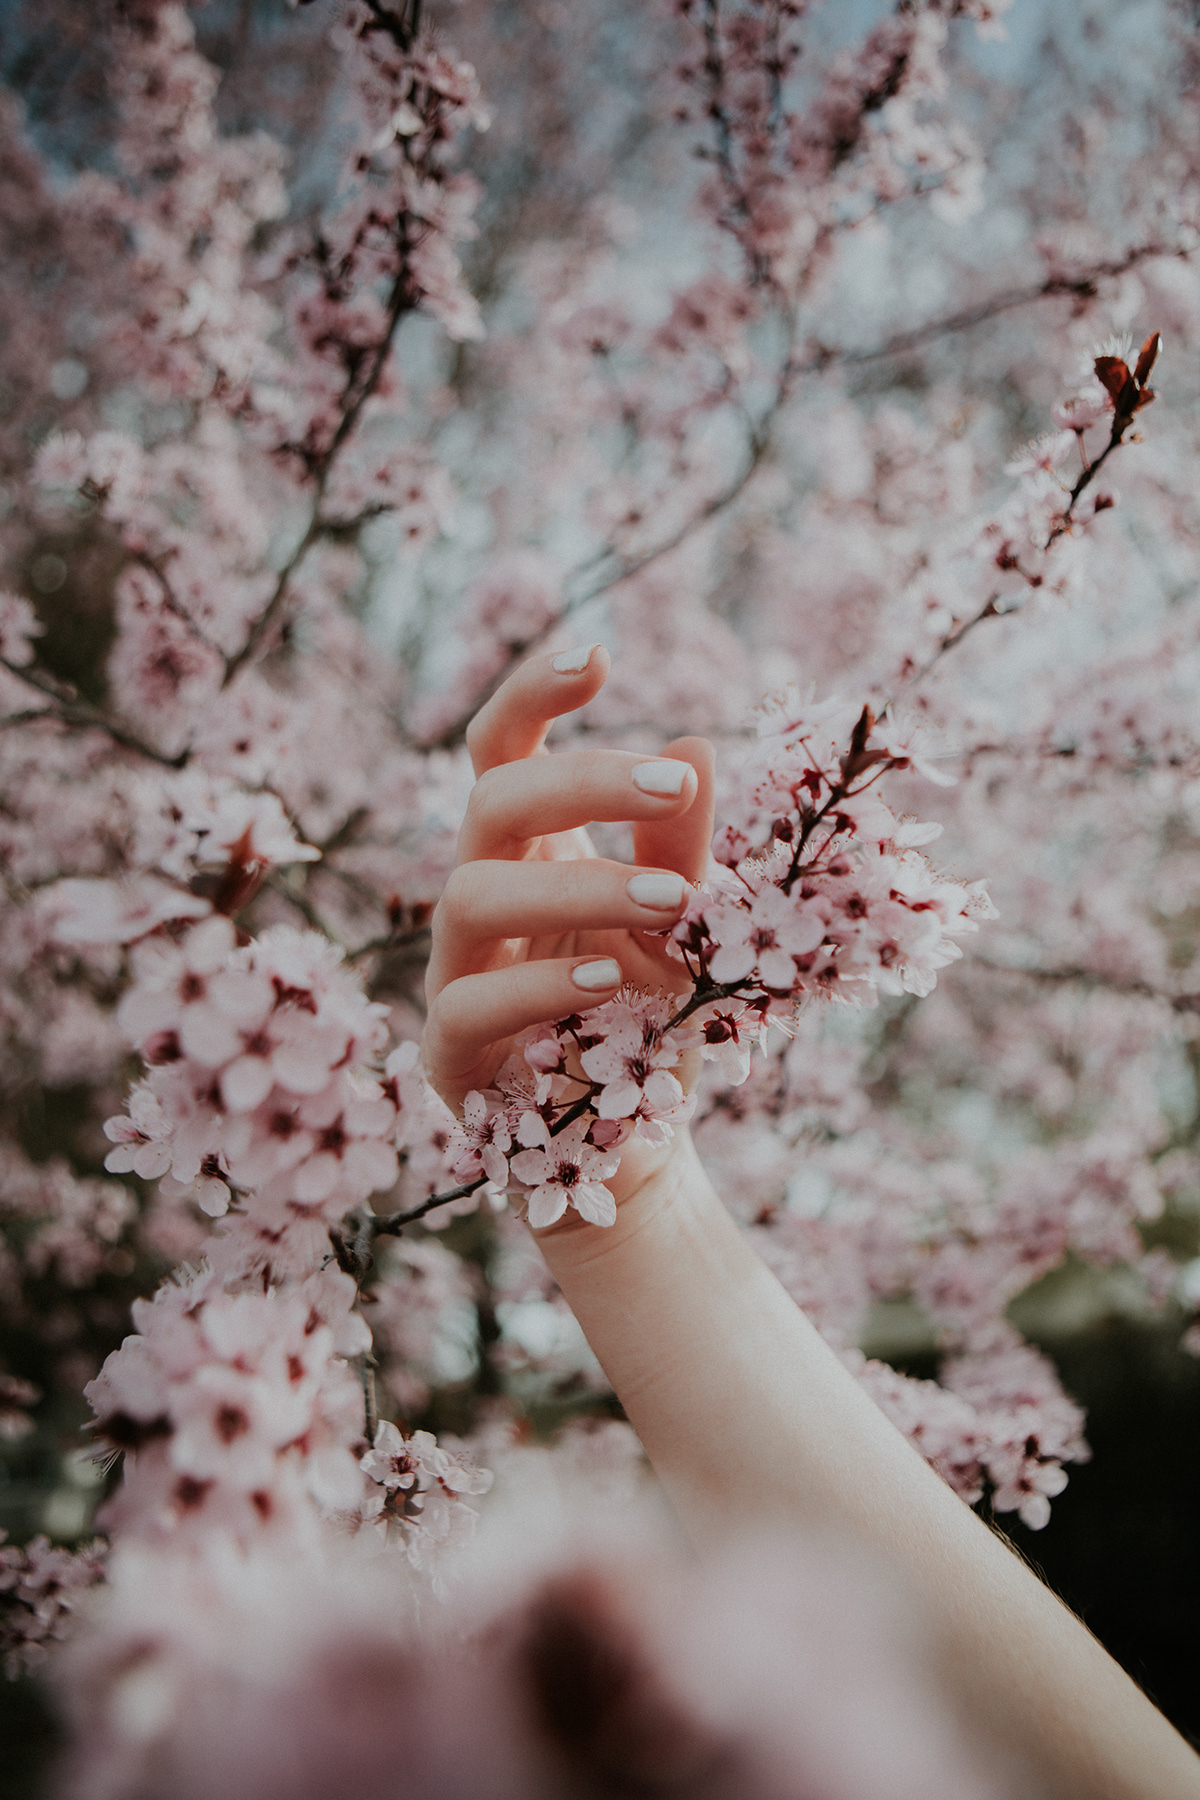 Flowers hands pink femme sensitivity calm beauty